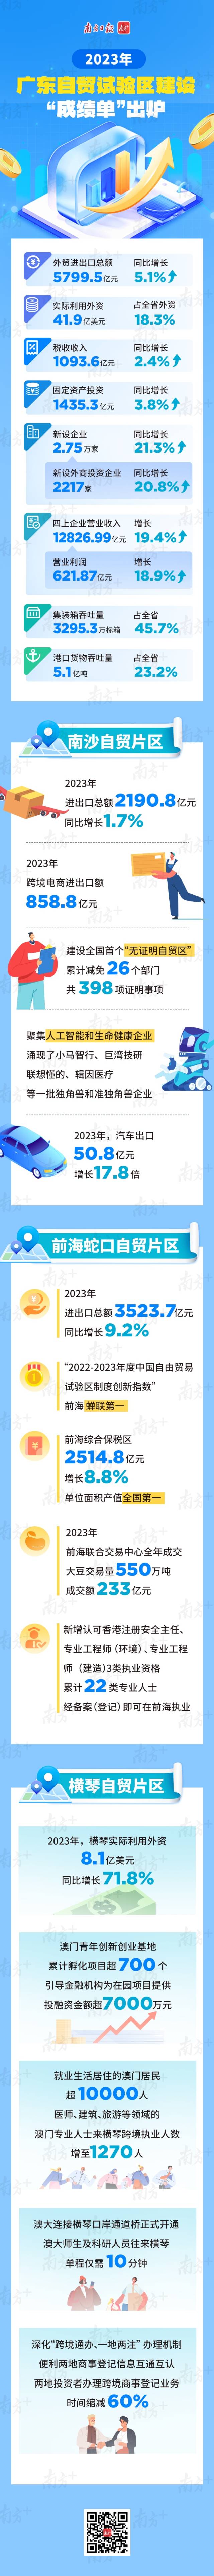 2023年广东自贸试验区建设“成绩单”  南方+ 甘展平 制图